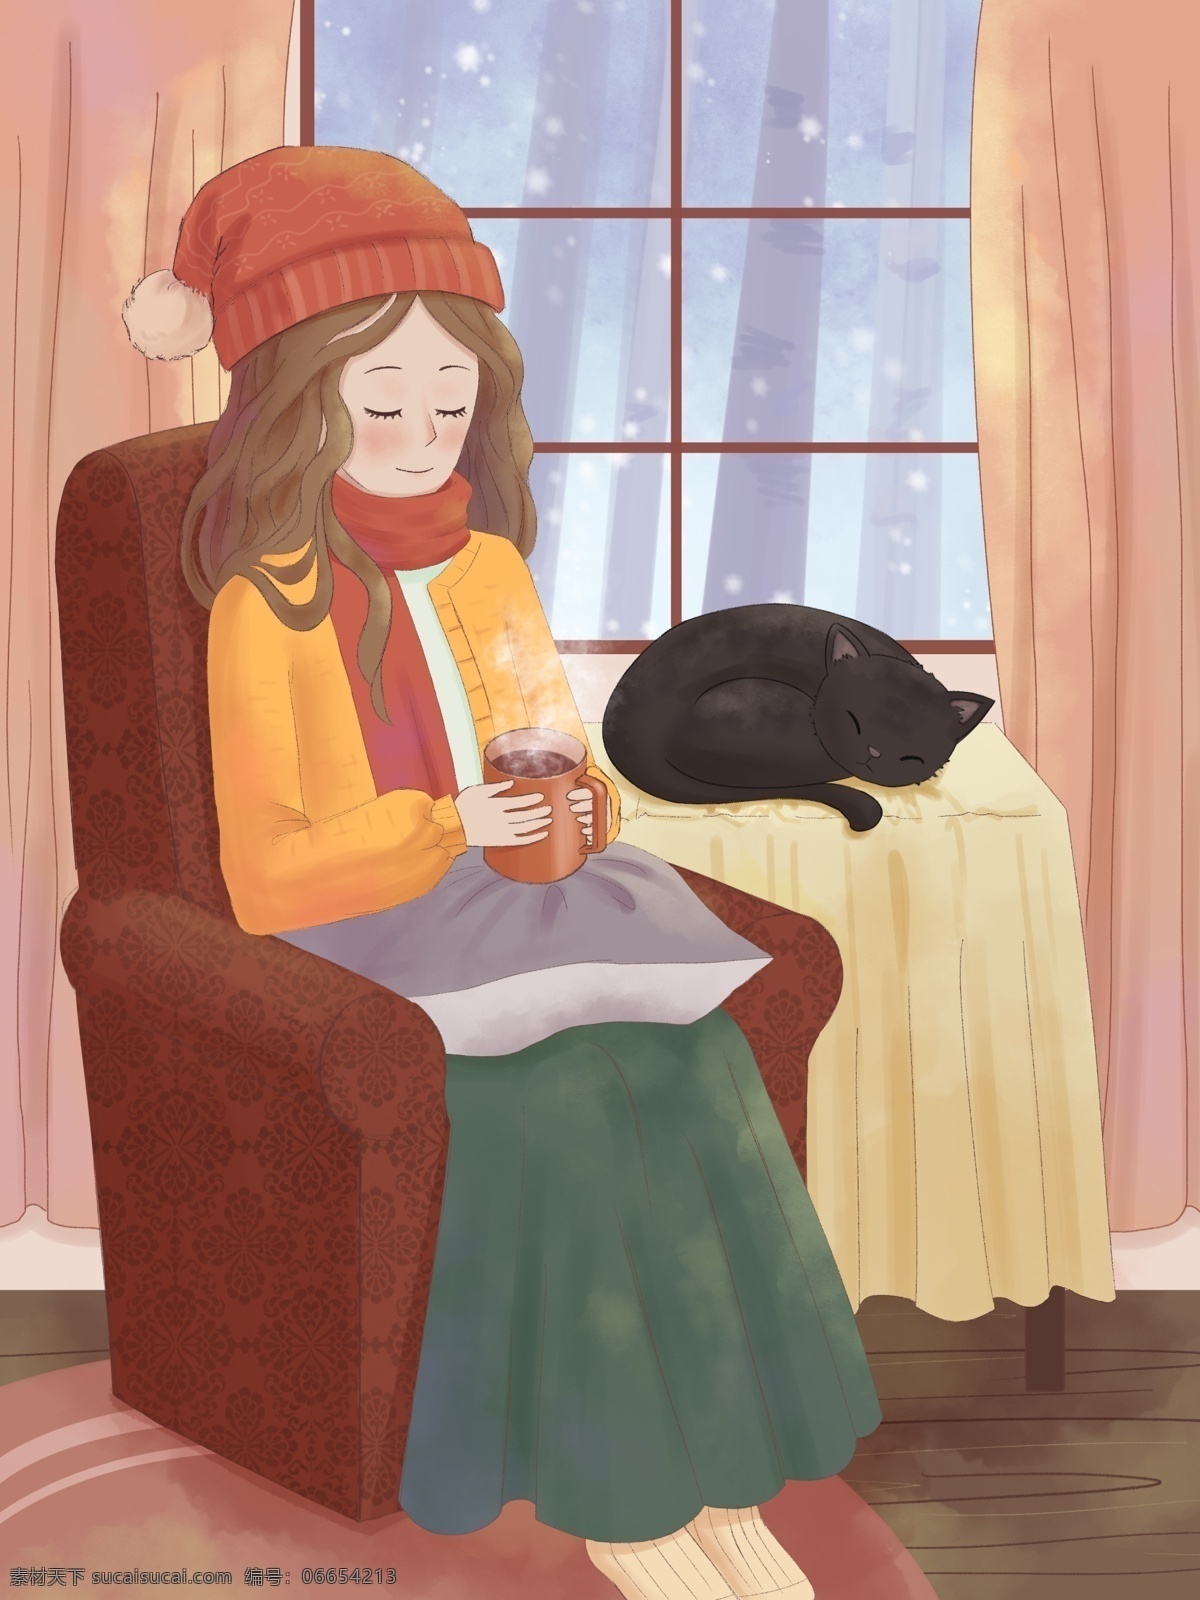 温馨 暖色调 冬天 女孩 沙发 喝 咖啡 取暖 插画 室内 居家 热饮 猫咪 下雪 舒服 一个人的生活 闲暇 治愈系